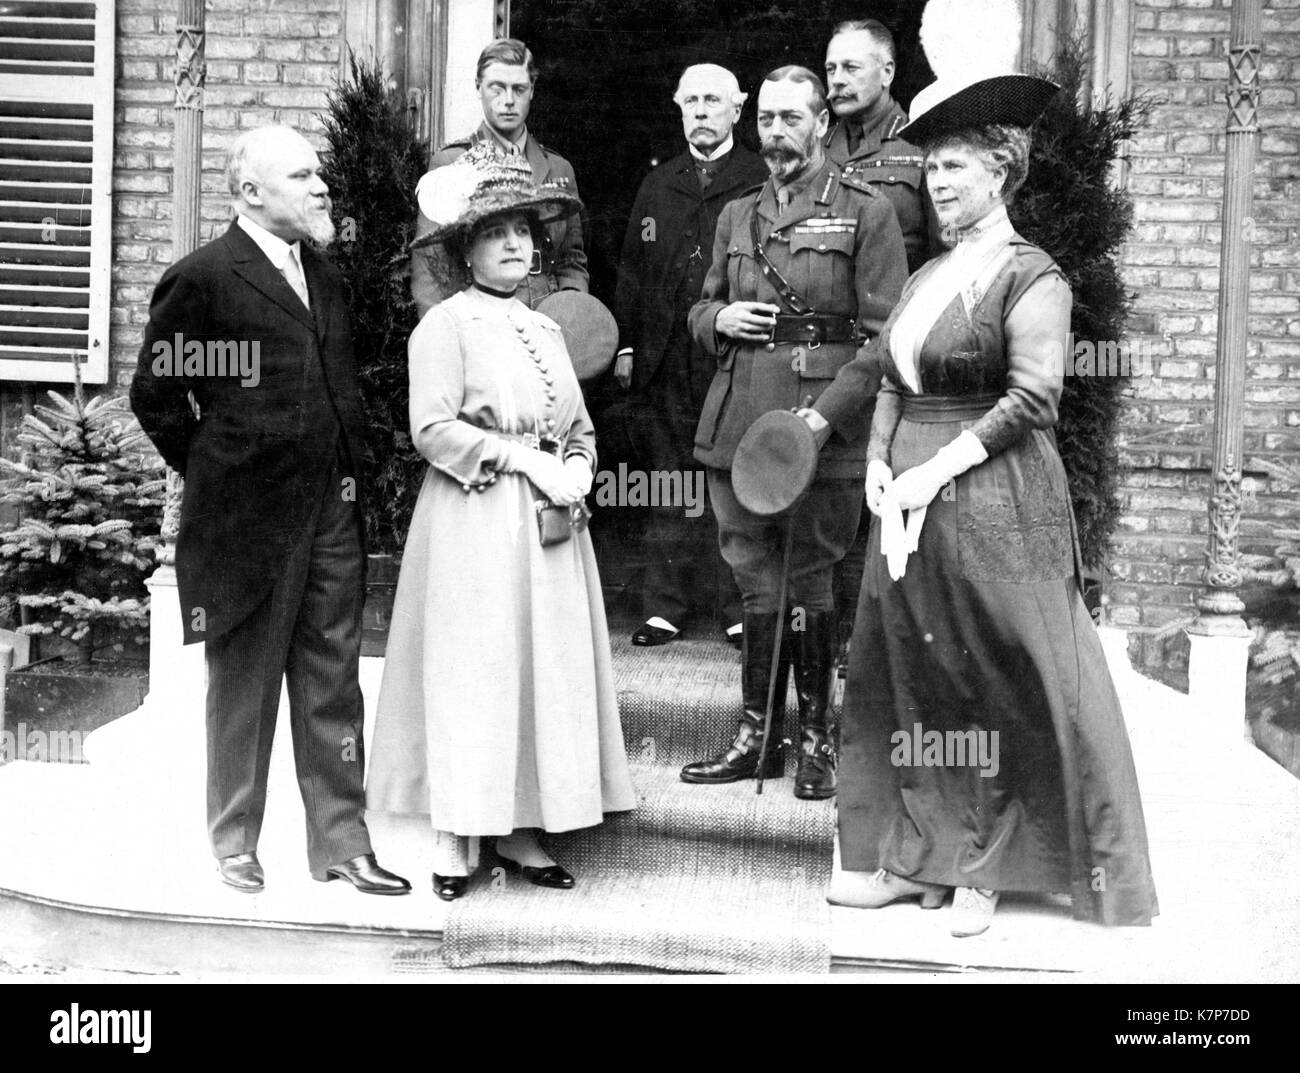 El presidente francés Raymond Poincare y esposa (izquierda) reunirse con el rey Jorge V y la Reina María de Inglaterra, el joven príncipe de Gales y otros dignatarios, Abbeville, Francia, 07/10/1917 Foto de stock